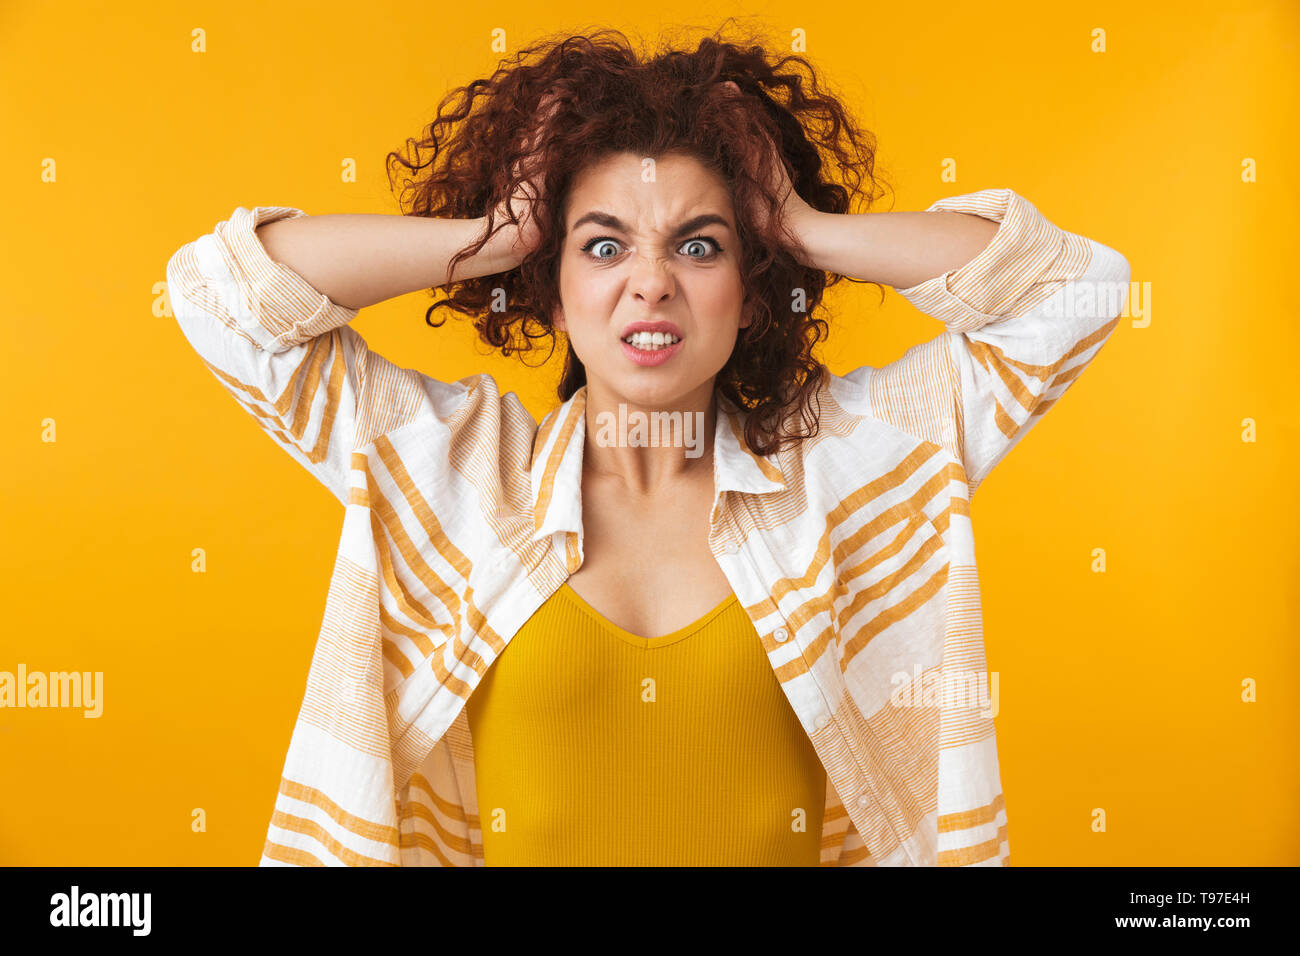 Image de femme agressive 20s avec des cheveux bouclés saisissant sa tête, isolé sur fond jaune Banque D'Images